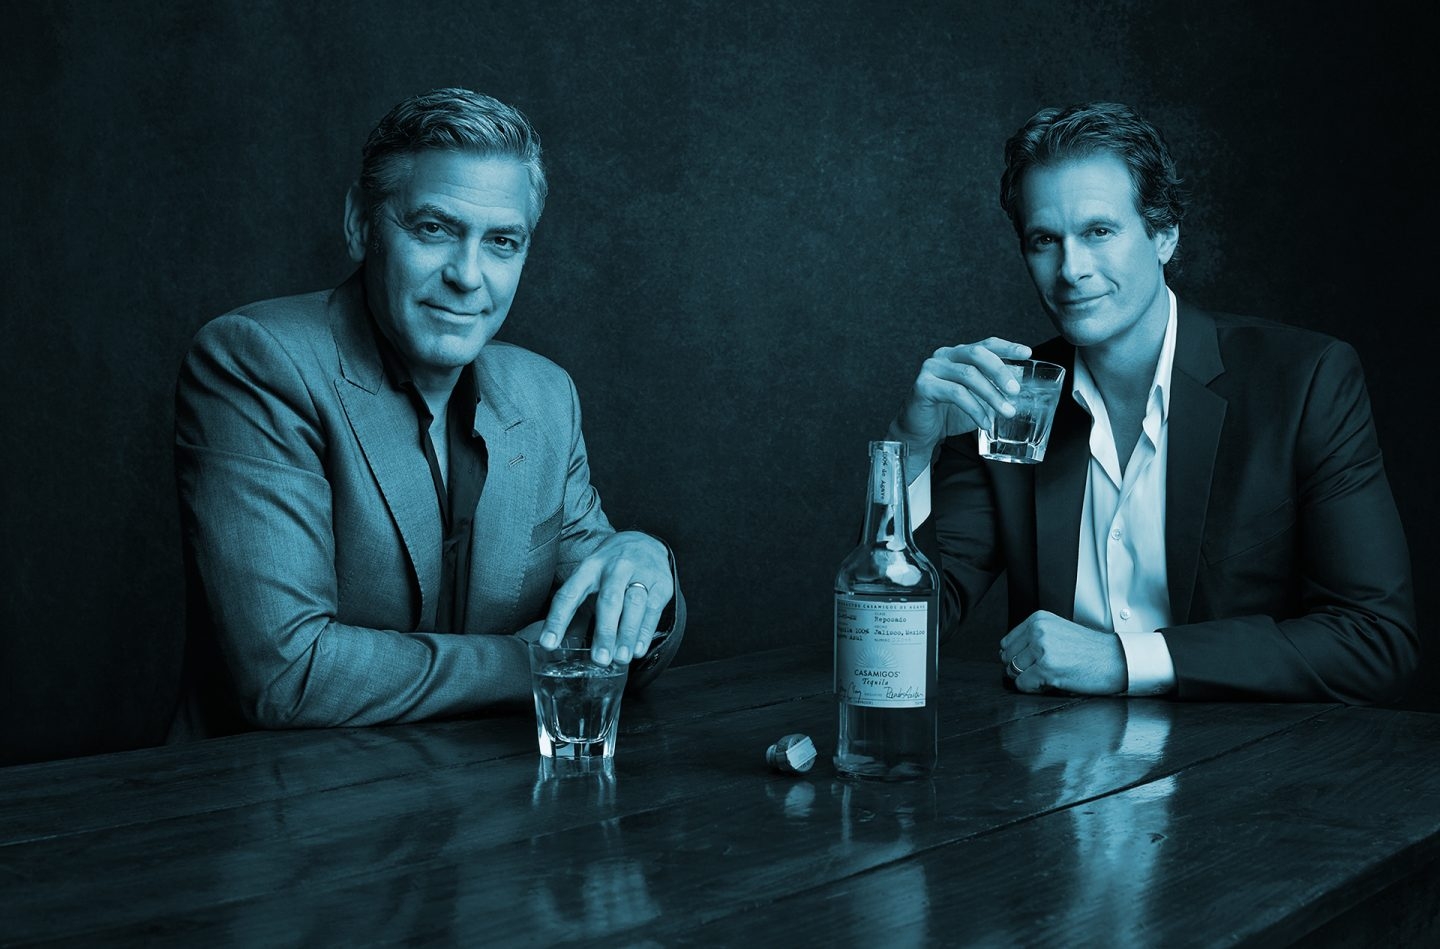 El actor George Clooney es uno de los fundadores de Casamigos, el fabricante de tequila adquirido por Diageo.